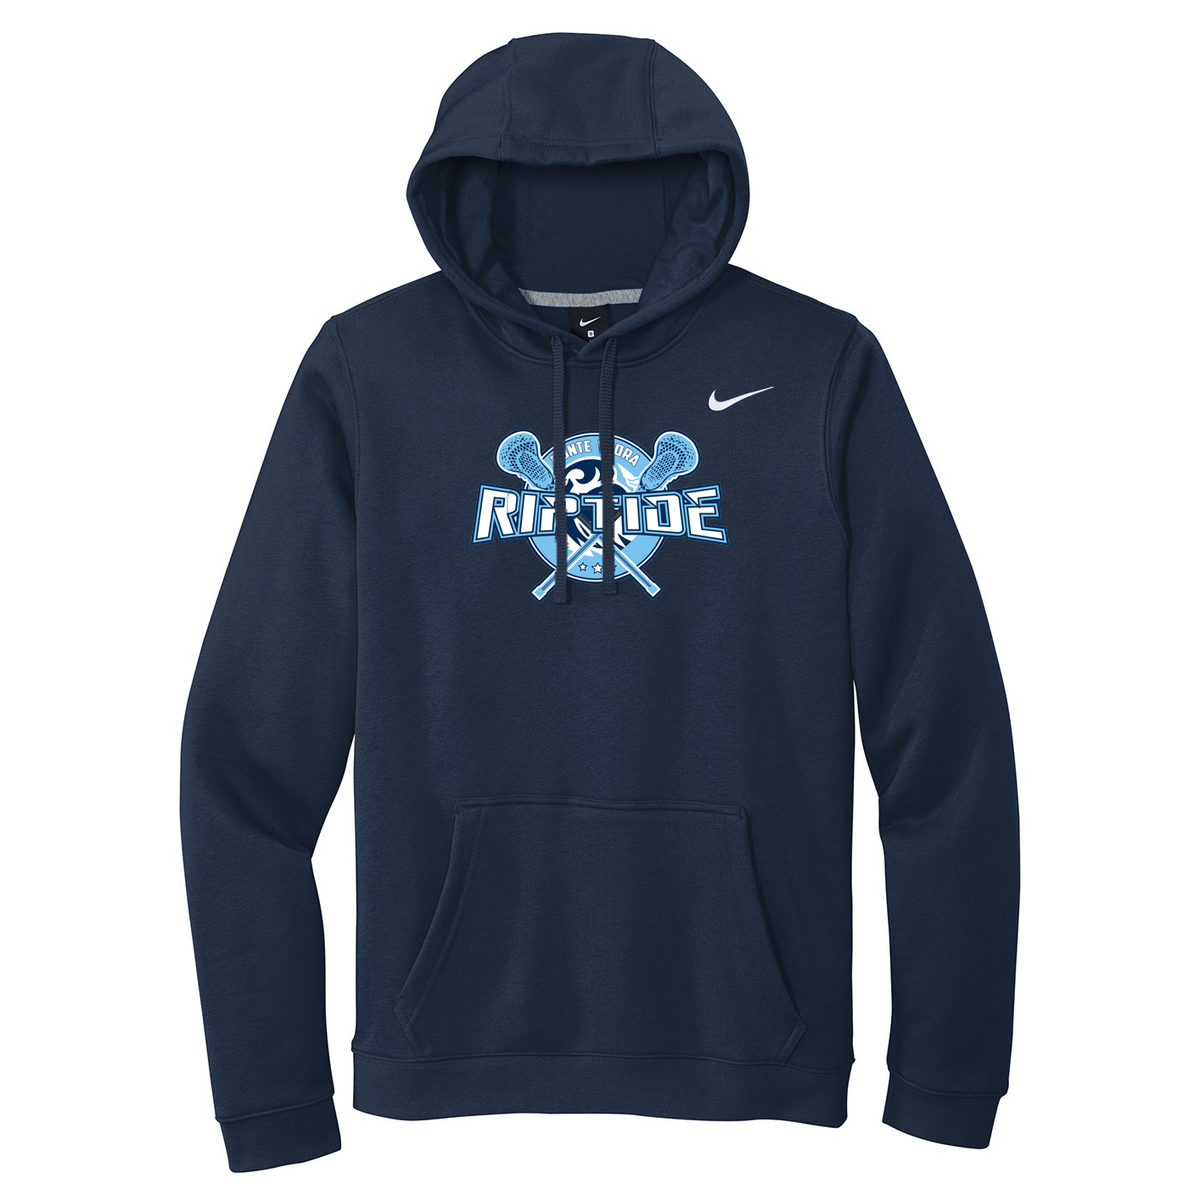 Ponte Vedra Riptide Lacrosse Nike Fleece Sweatshirt